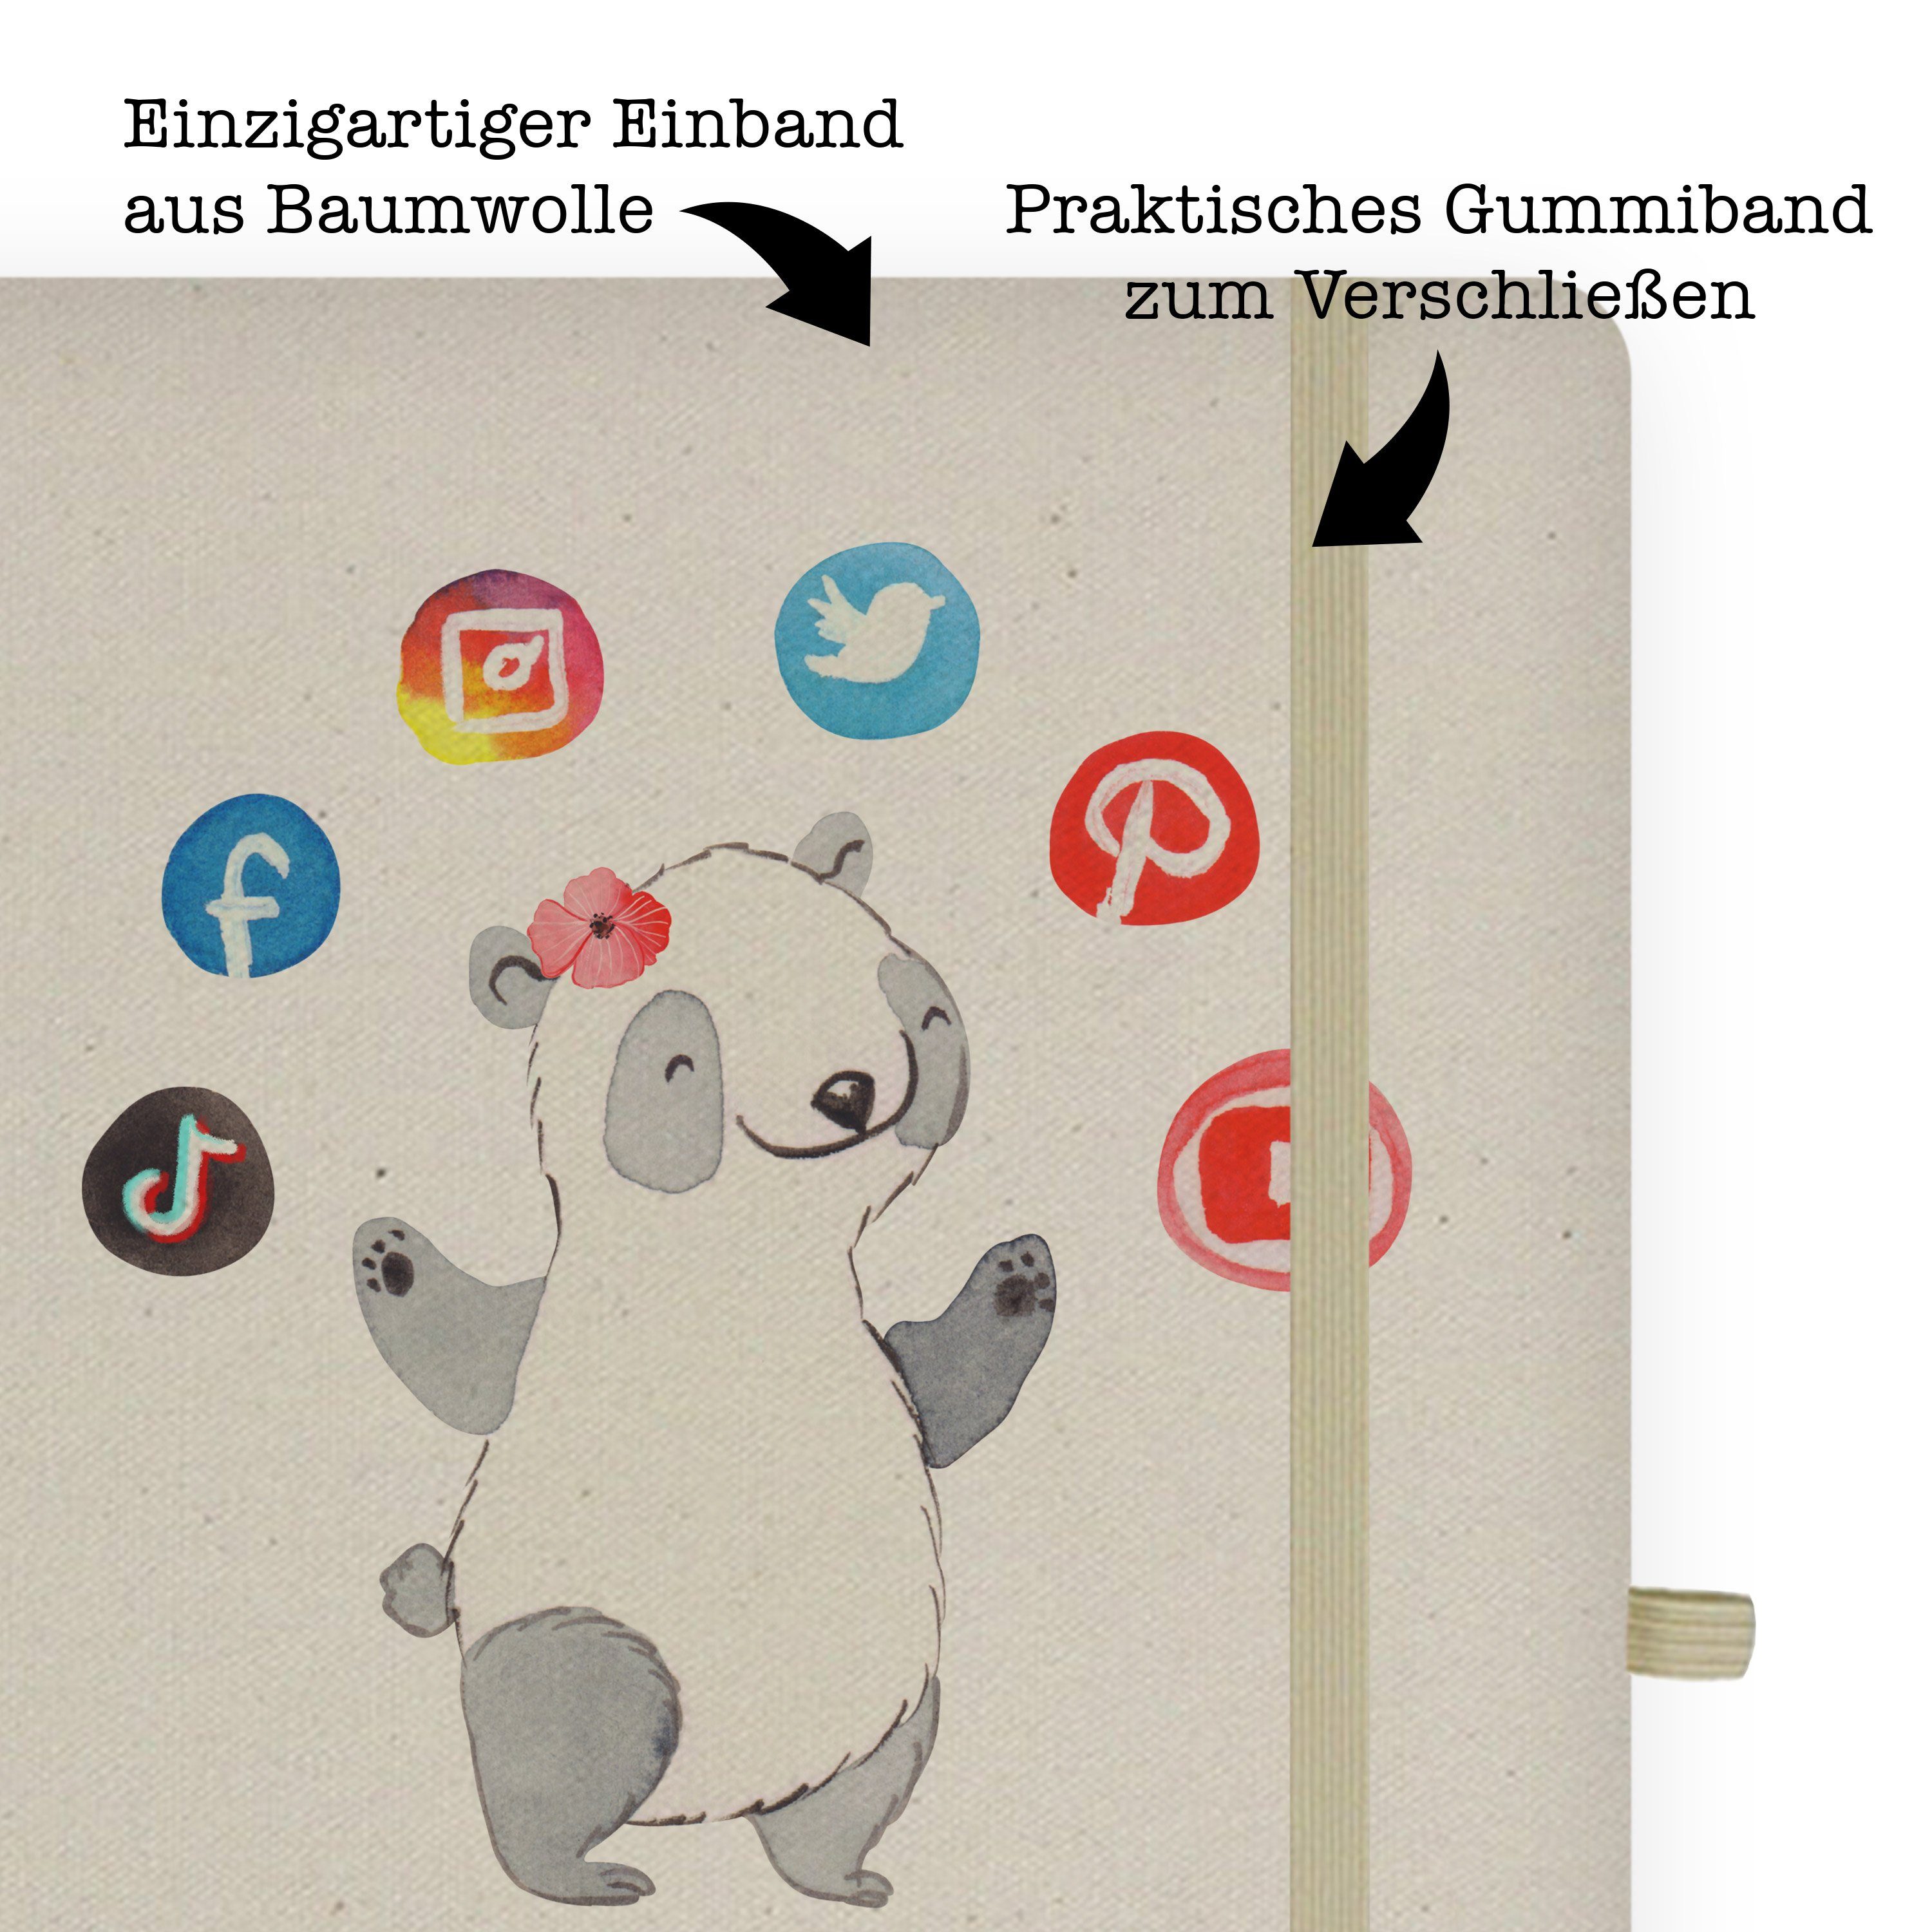 - Mrs. Jubiläum, mit Panda & Notizbuch Mr. Herz & Geschenk, Online Mrs. Manager Transparent Marketing Mr. - Panda